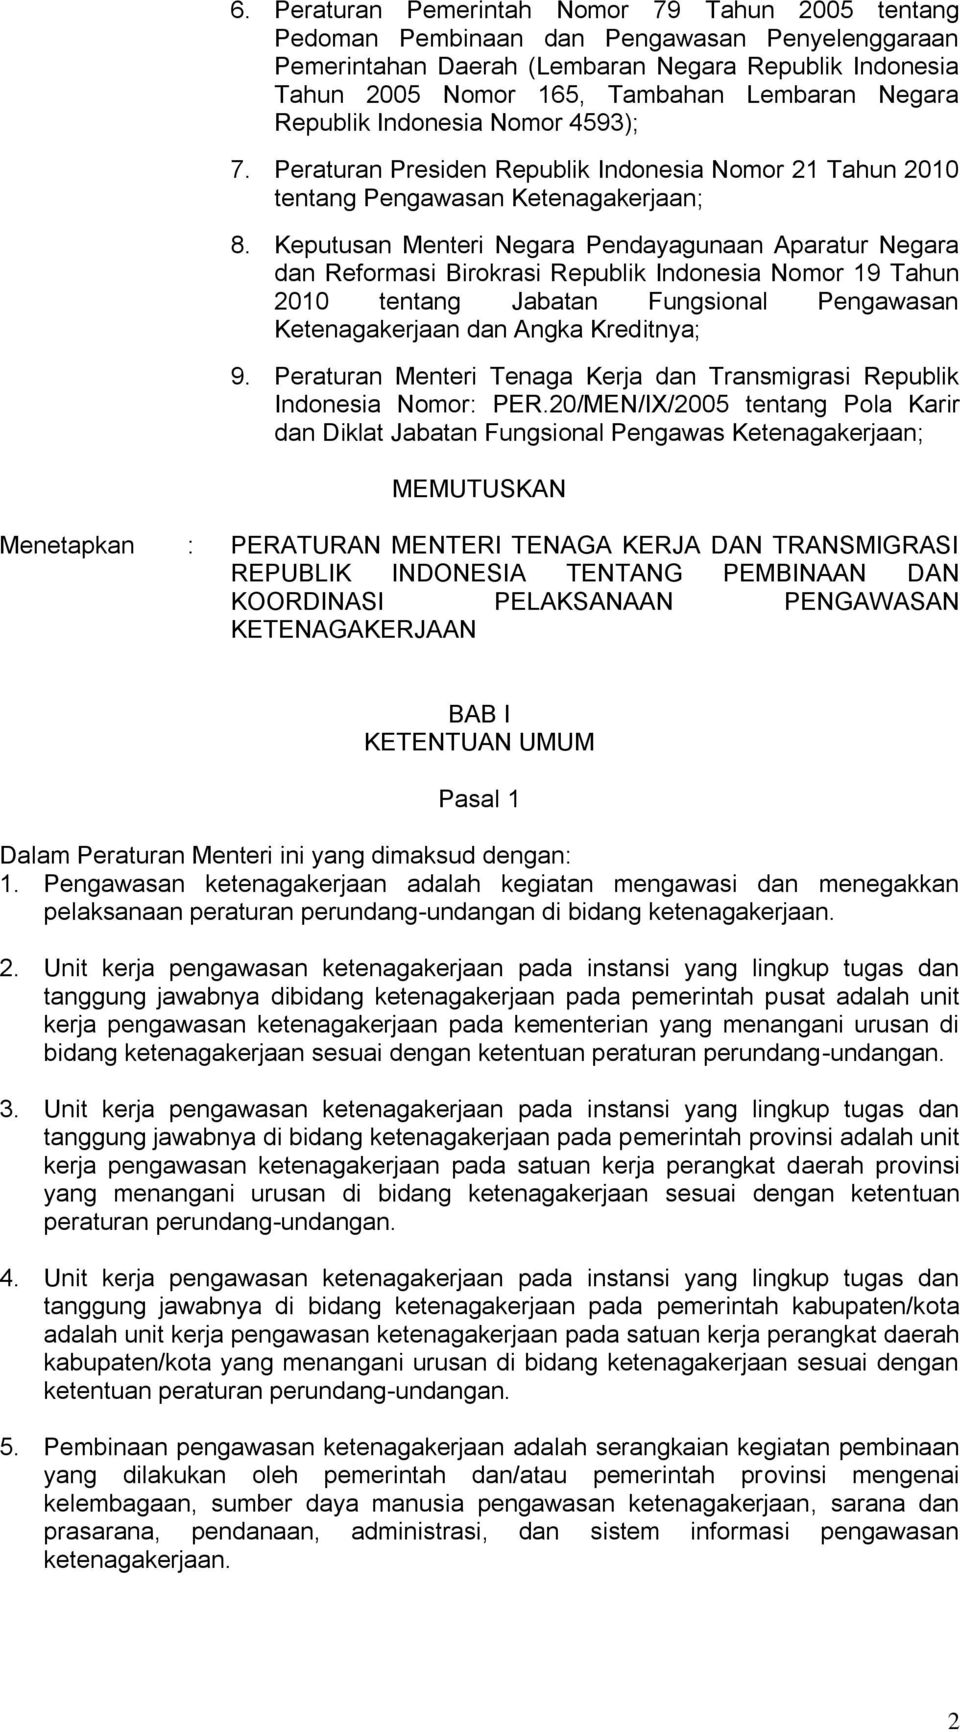 Keputusan Menteri Negara Pendayagunaan Aparatur Negara dan Reformasi Birokrasi Republik Indonesia Nomor 19 Tahun 2010 tentang Jabatan Fungsional Pengawasan Ketenagakerjaan dan Angka Kreditnya; 9.